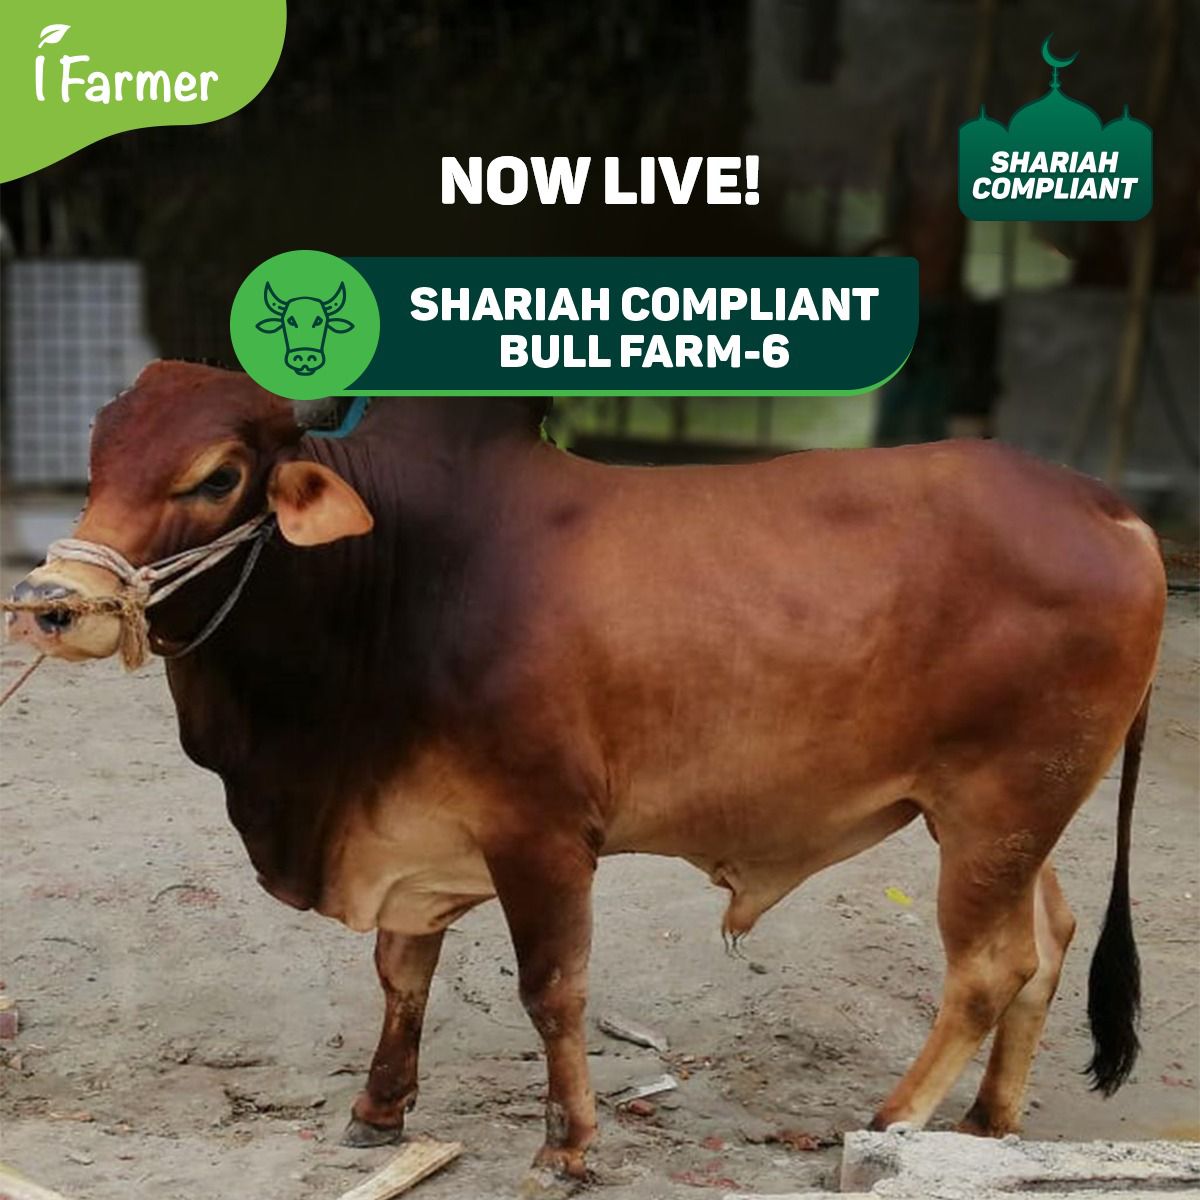 Shariah Compliant Bull Farm - 6